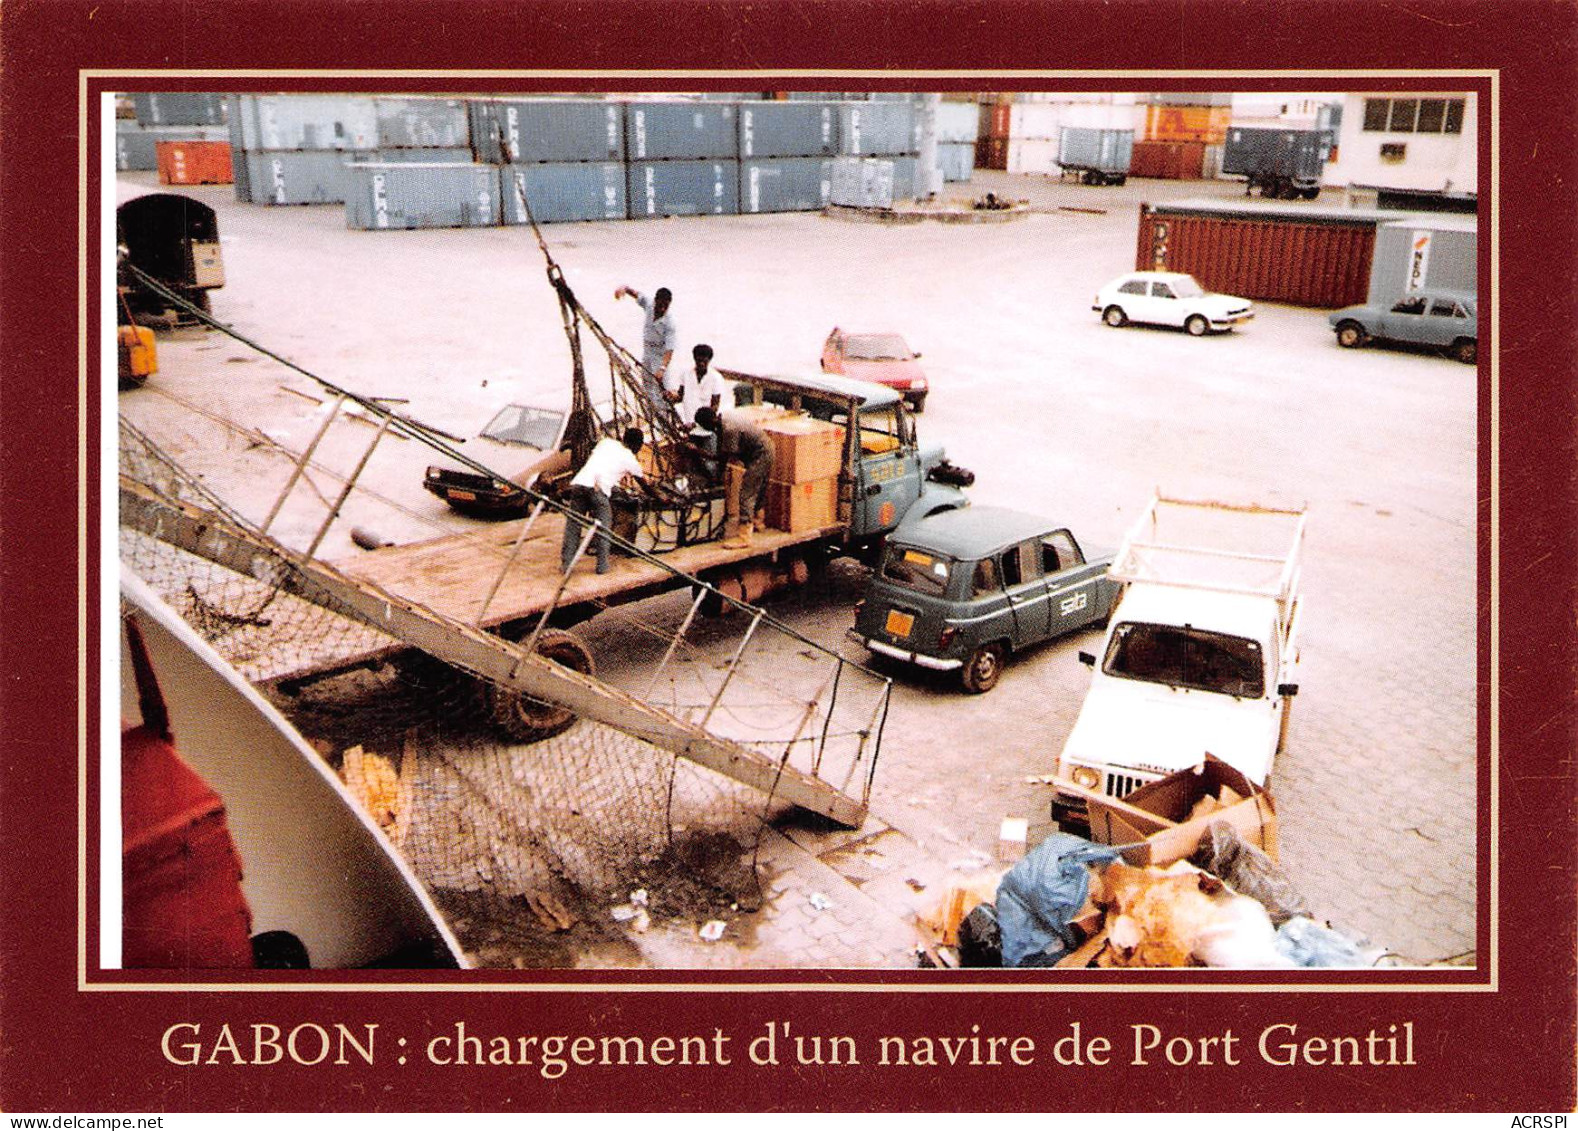 Gabon PORT-GENTIL  1985 La SATA Air Fret Charge Un Navire  (Scan R/V) N° 25 \MP7166 - Gabon